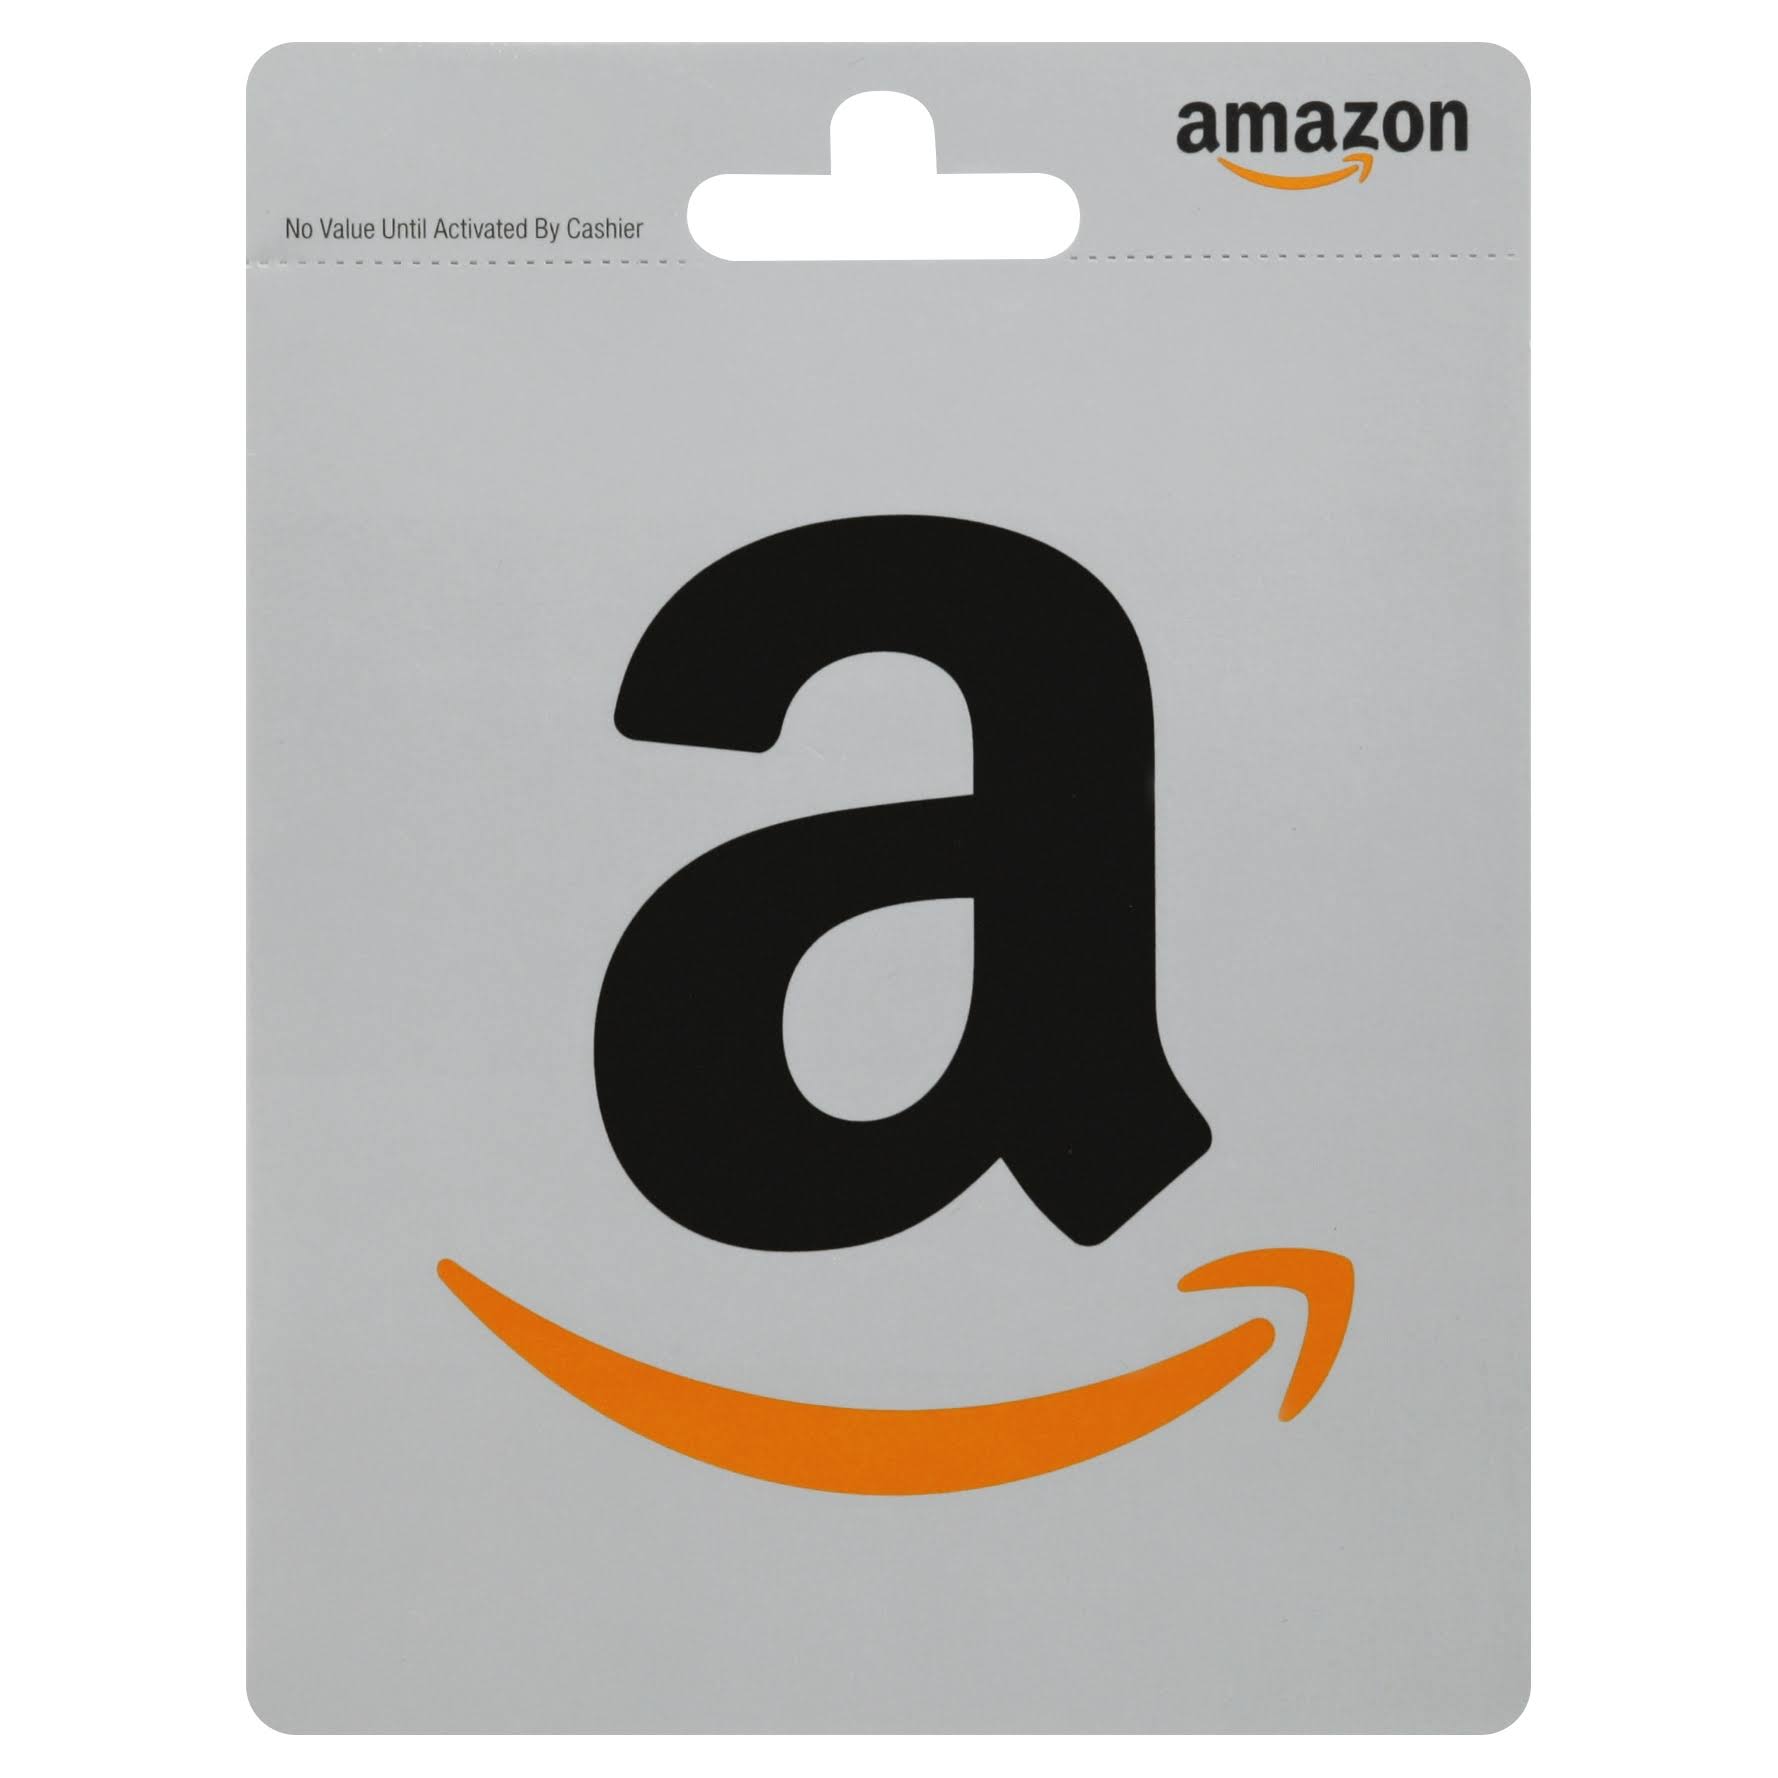 Amazon Gift Card,